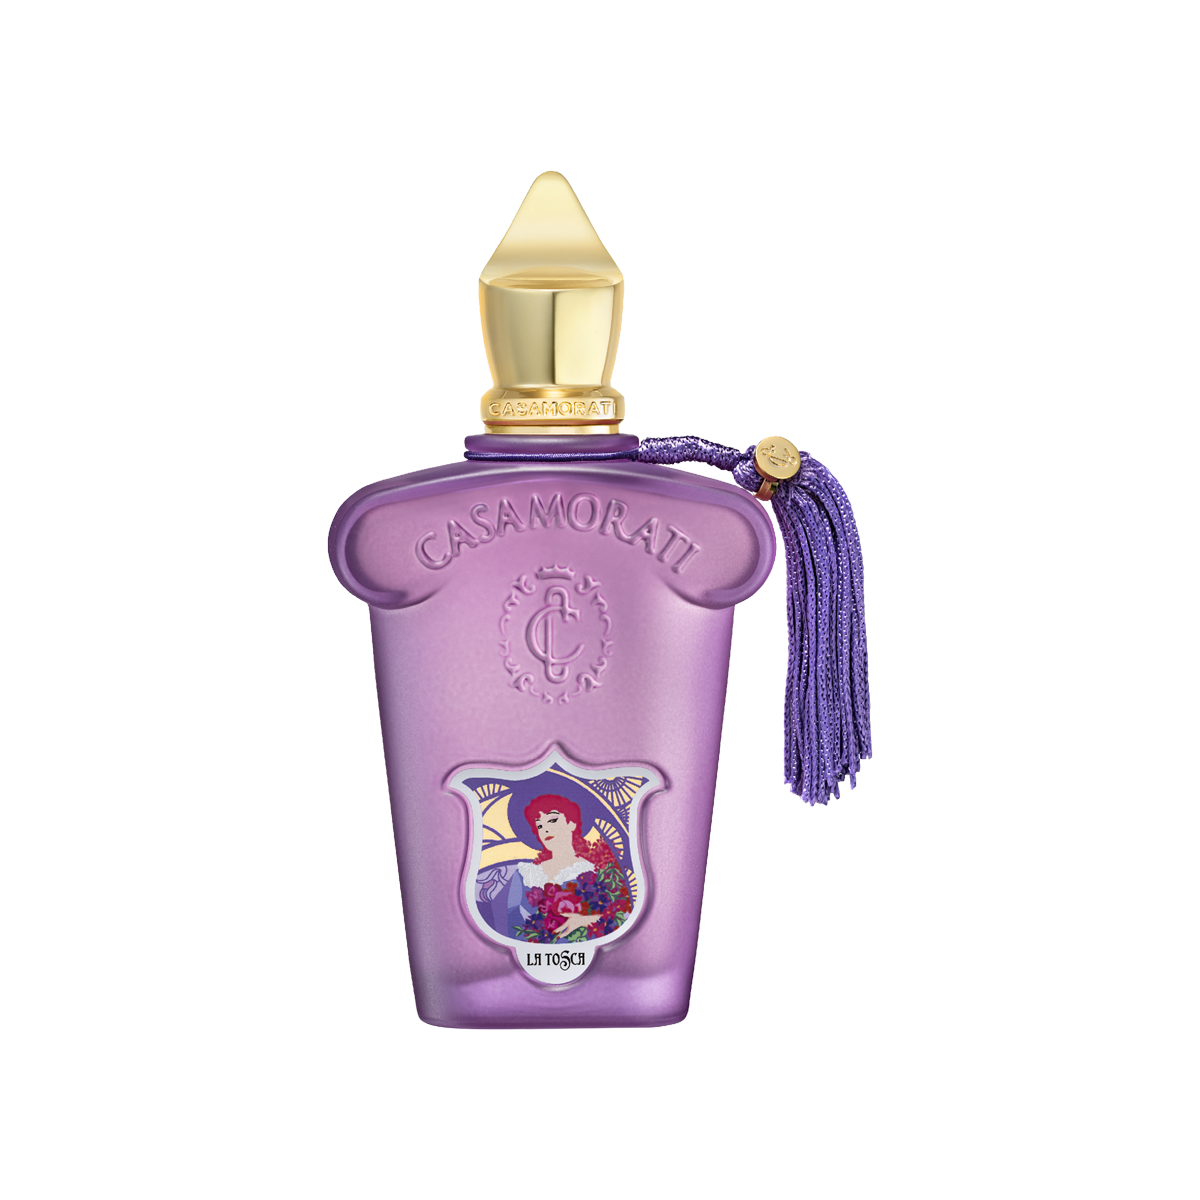 Casamorati - La Tosca Eau de Parfum